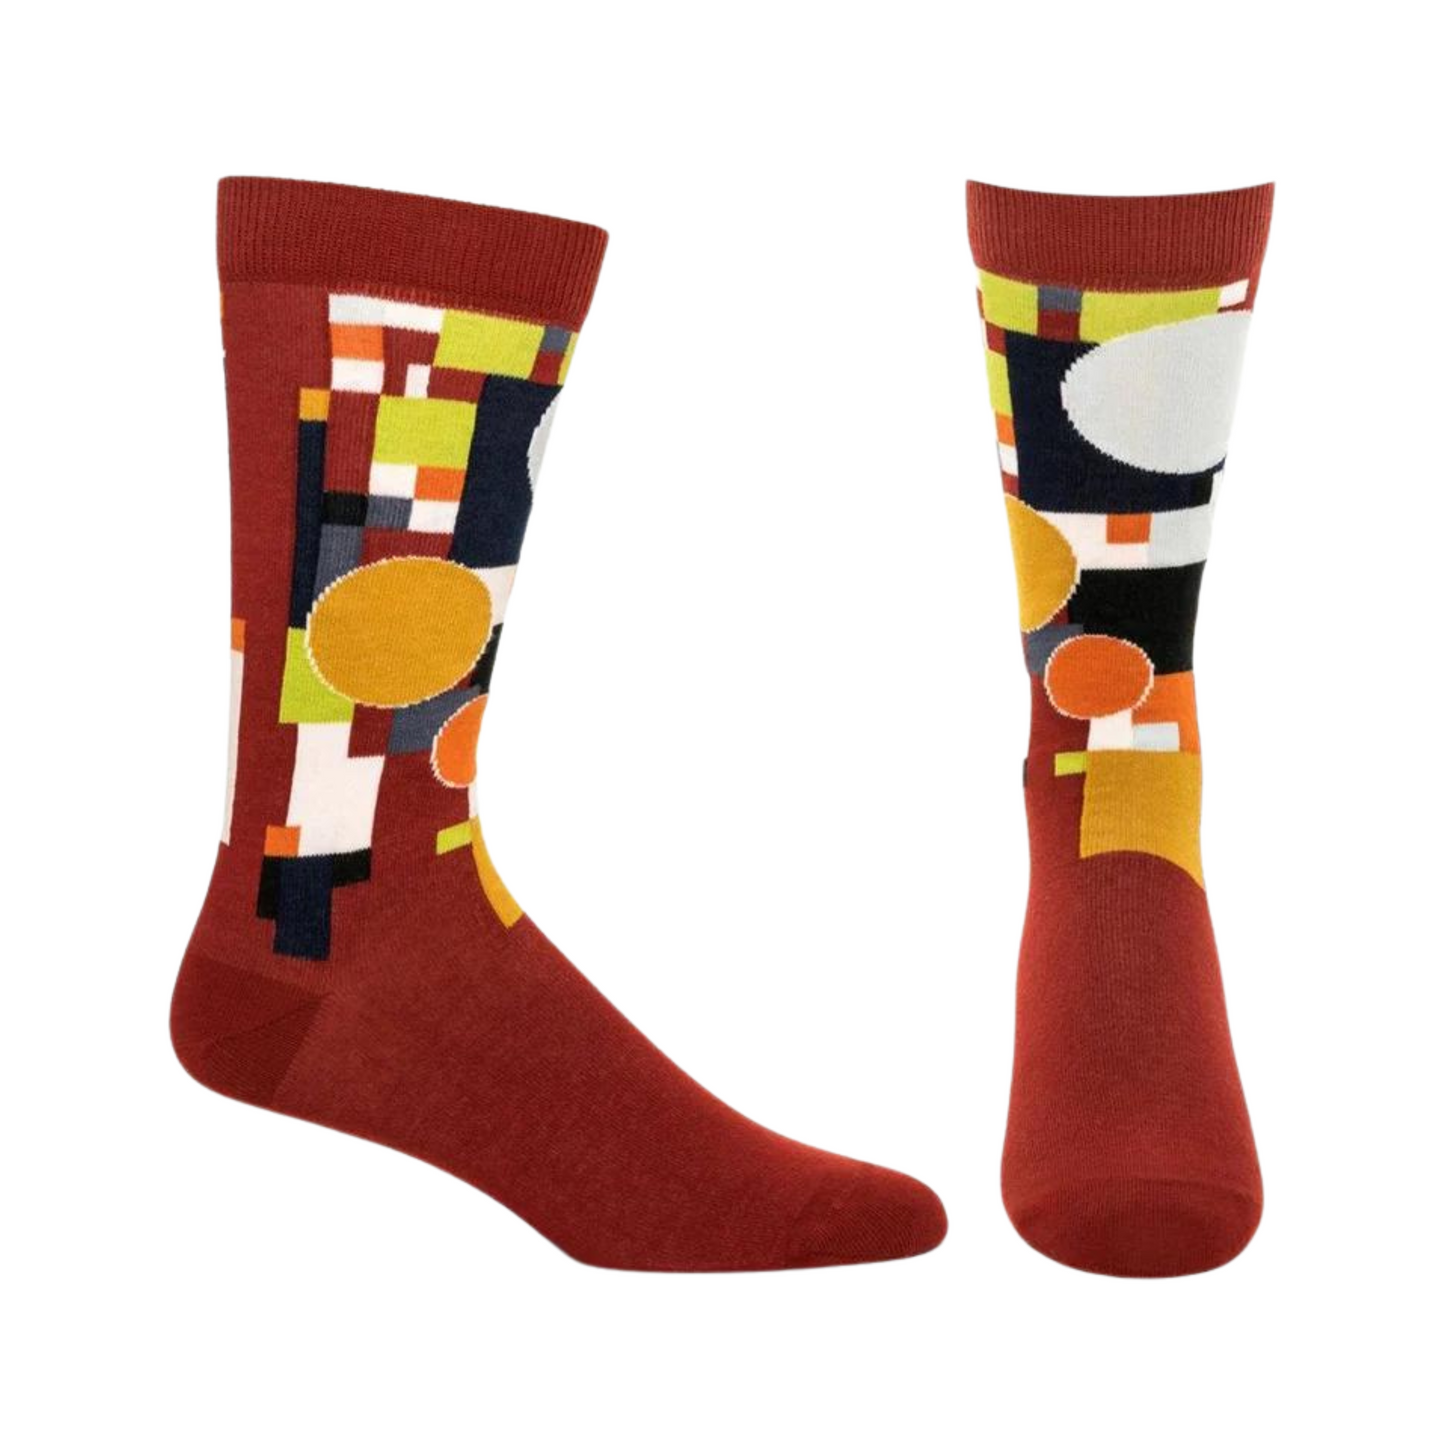 Socks-Men's Coonley Red